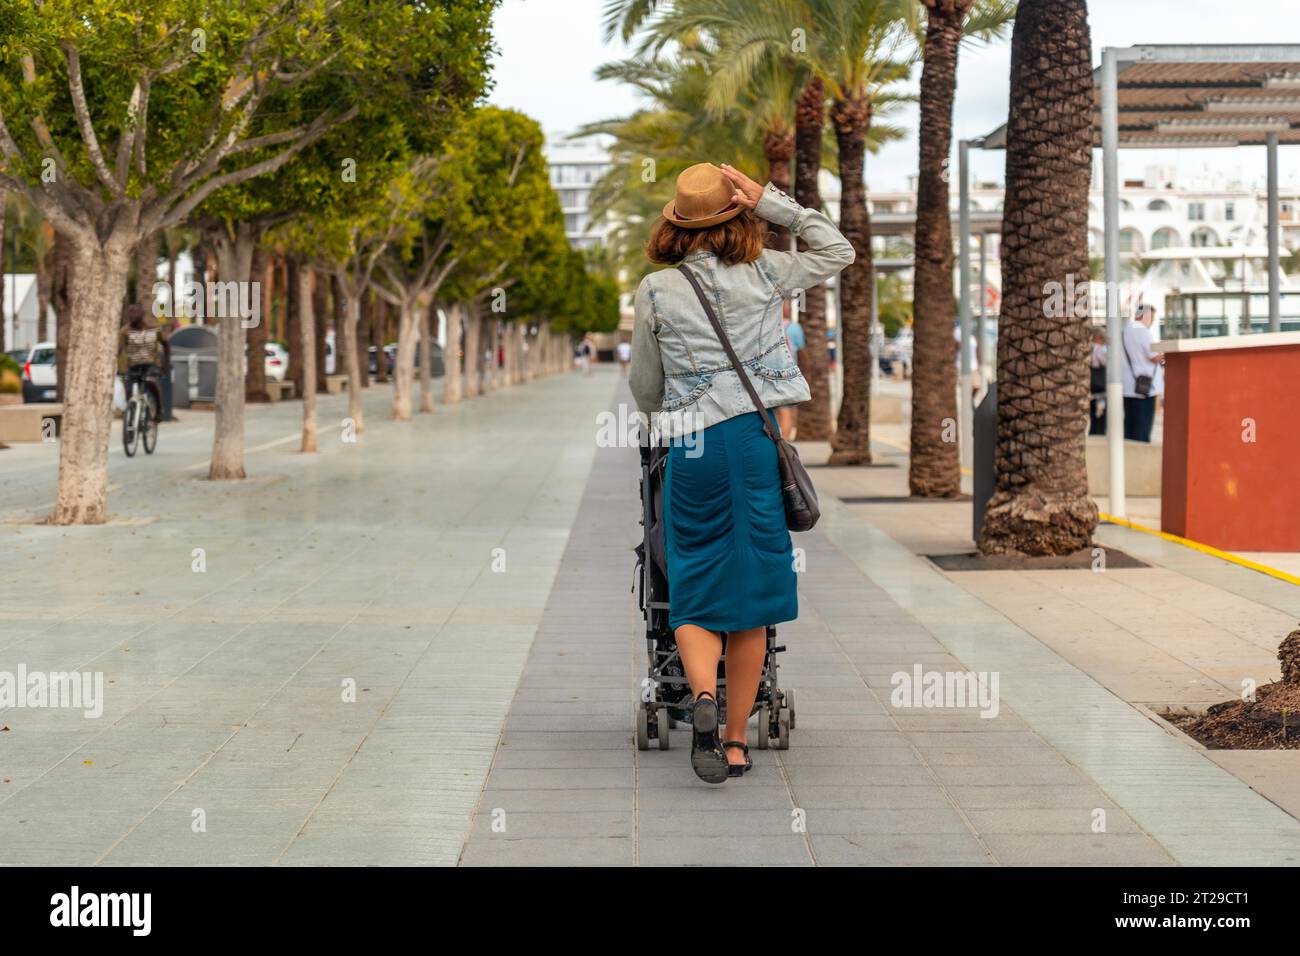 Eine Mutter mit ihrer Tochter im Palmenpark in San Antonio Abad im Hafen auf Ibiza Island. Balearen Stockfoto